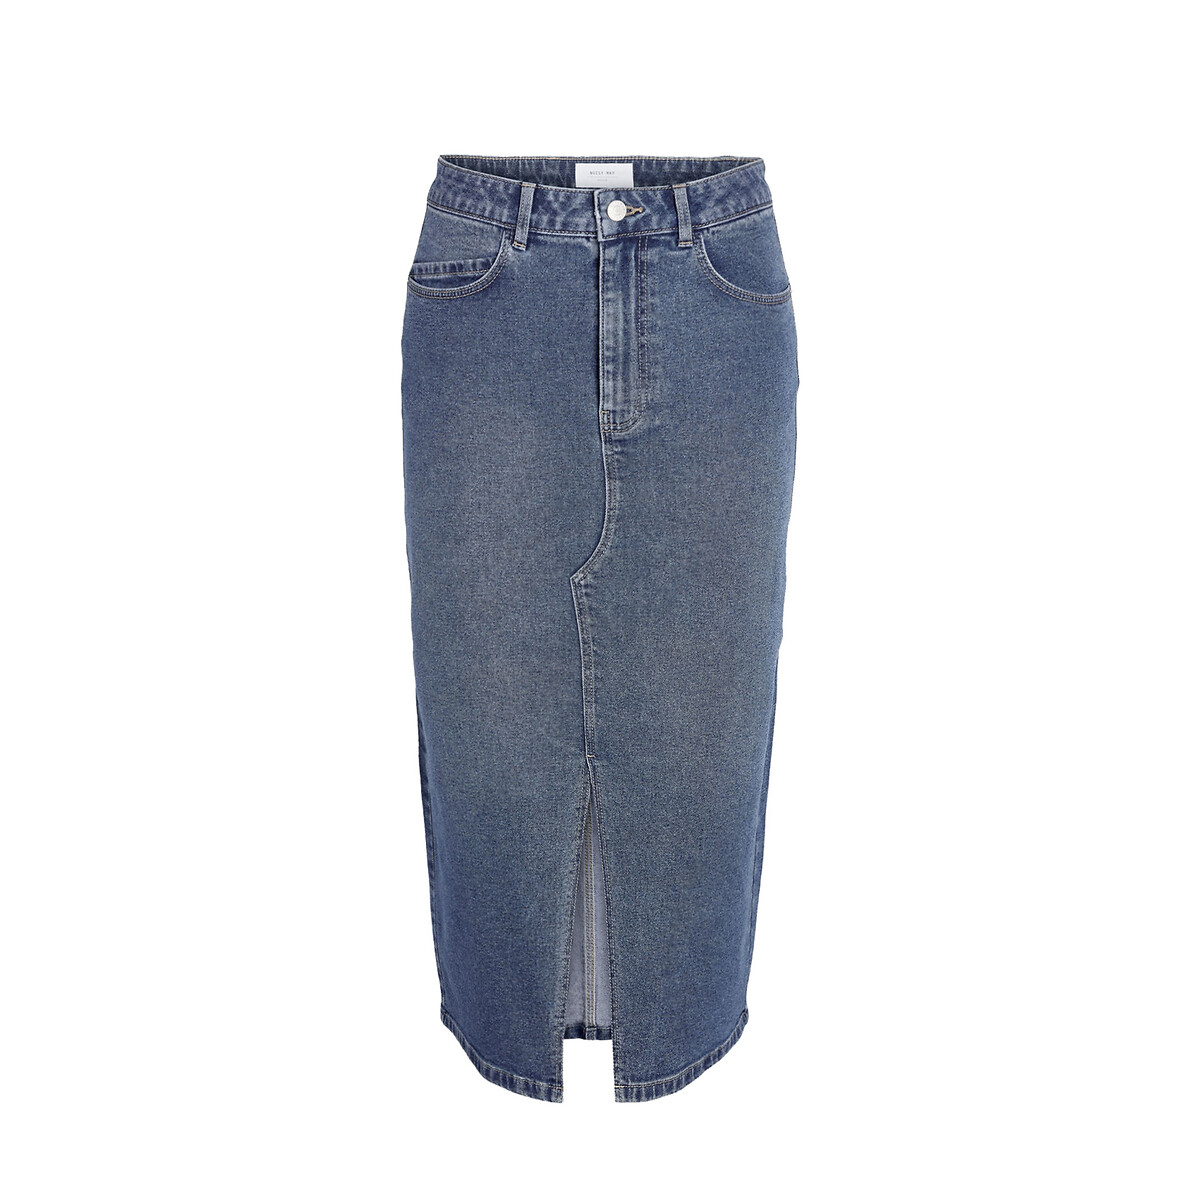 Юбка-миди из джинсовой ткани XS синий юбка миди из джинсовой ткани arket белый